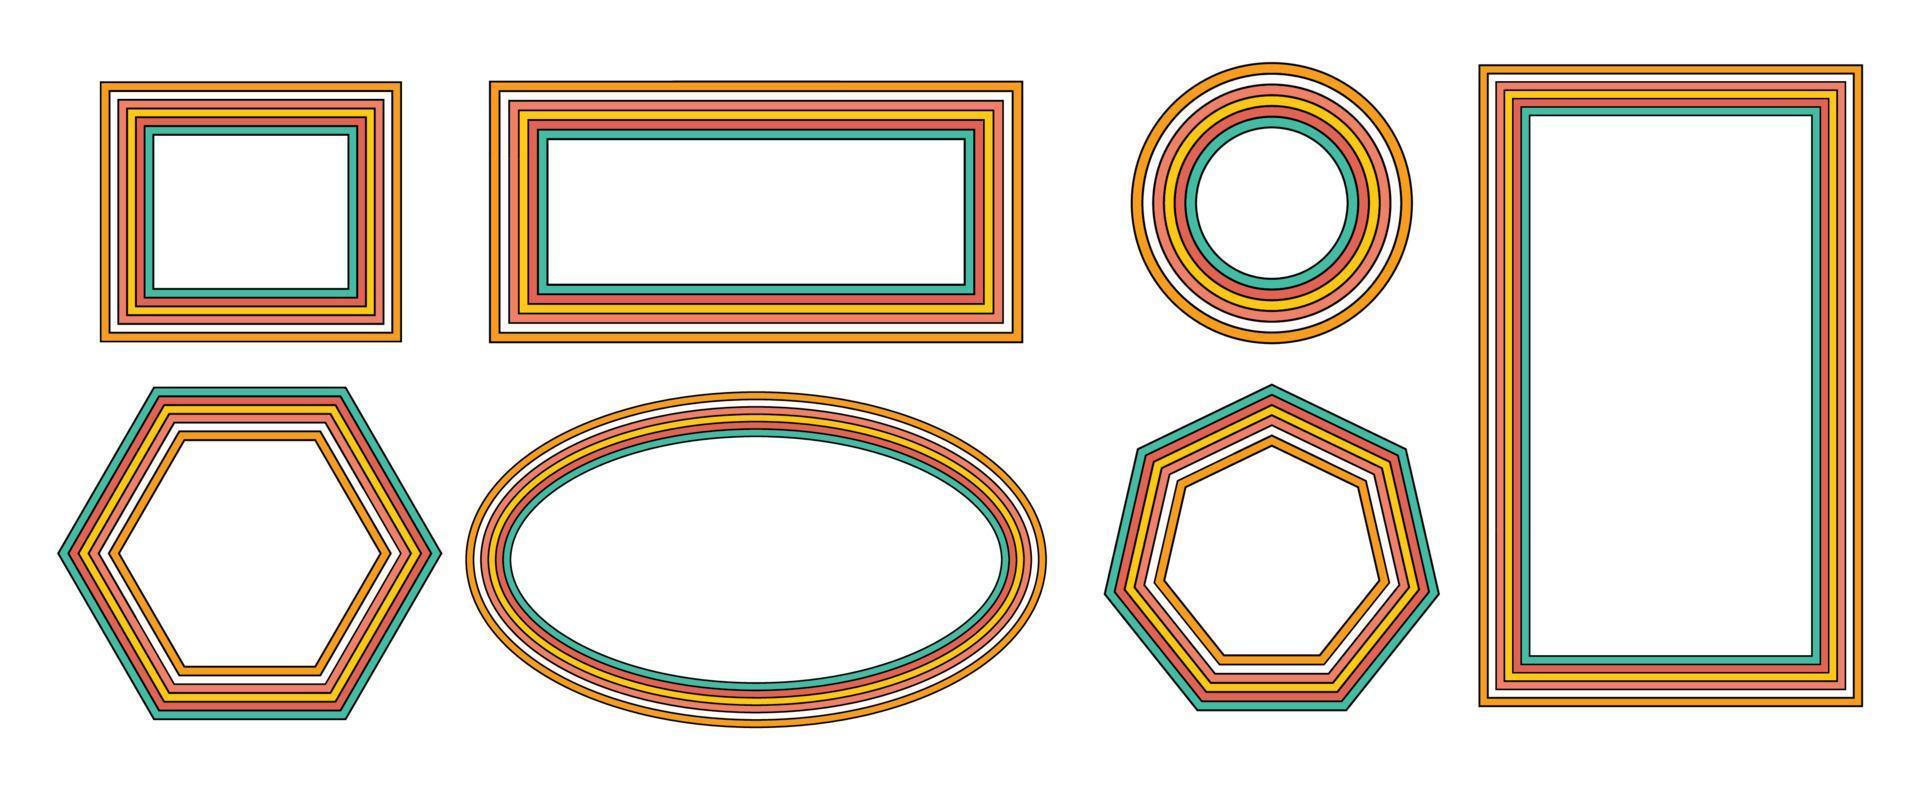 set di cornici arcobaleno in stile hippie anni '70. modelli retrò vintage anni '70 groove. collezione di cornice rotonda, stella, rombo e quadrato. disegno di illustrazione vettoriale isolato.